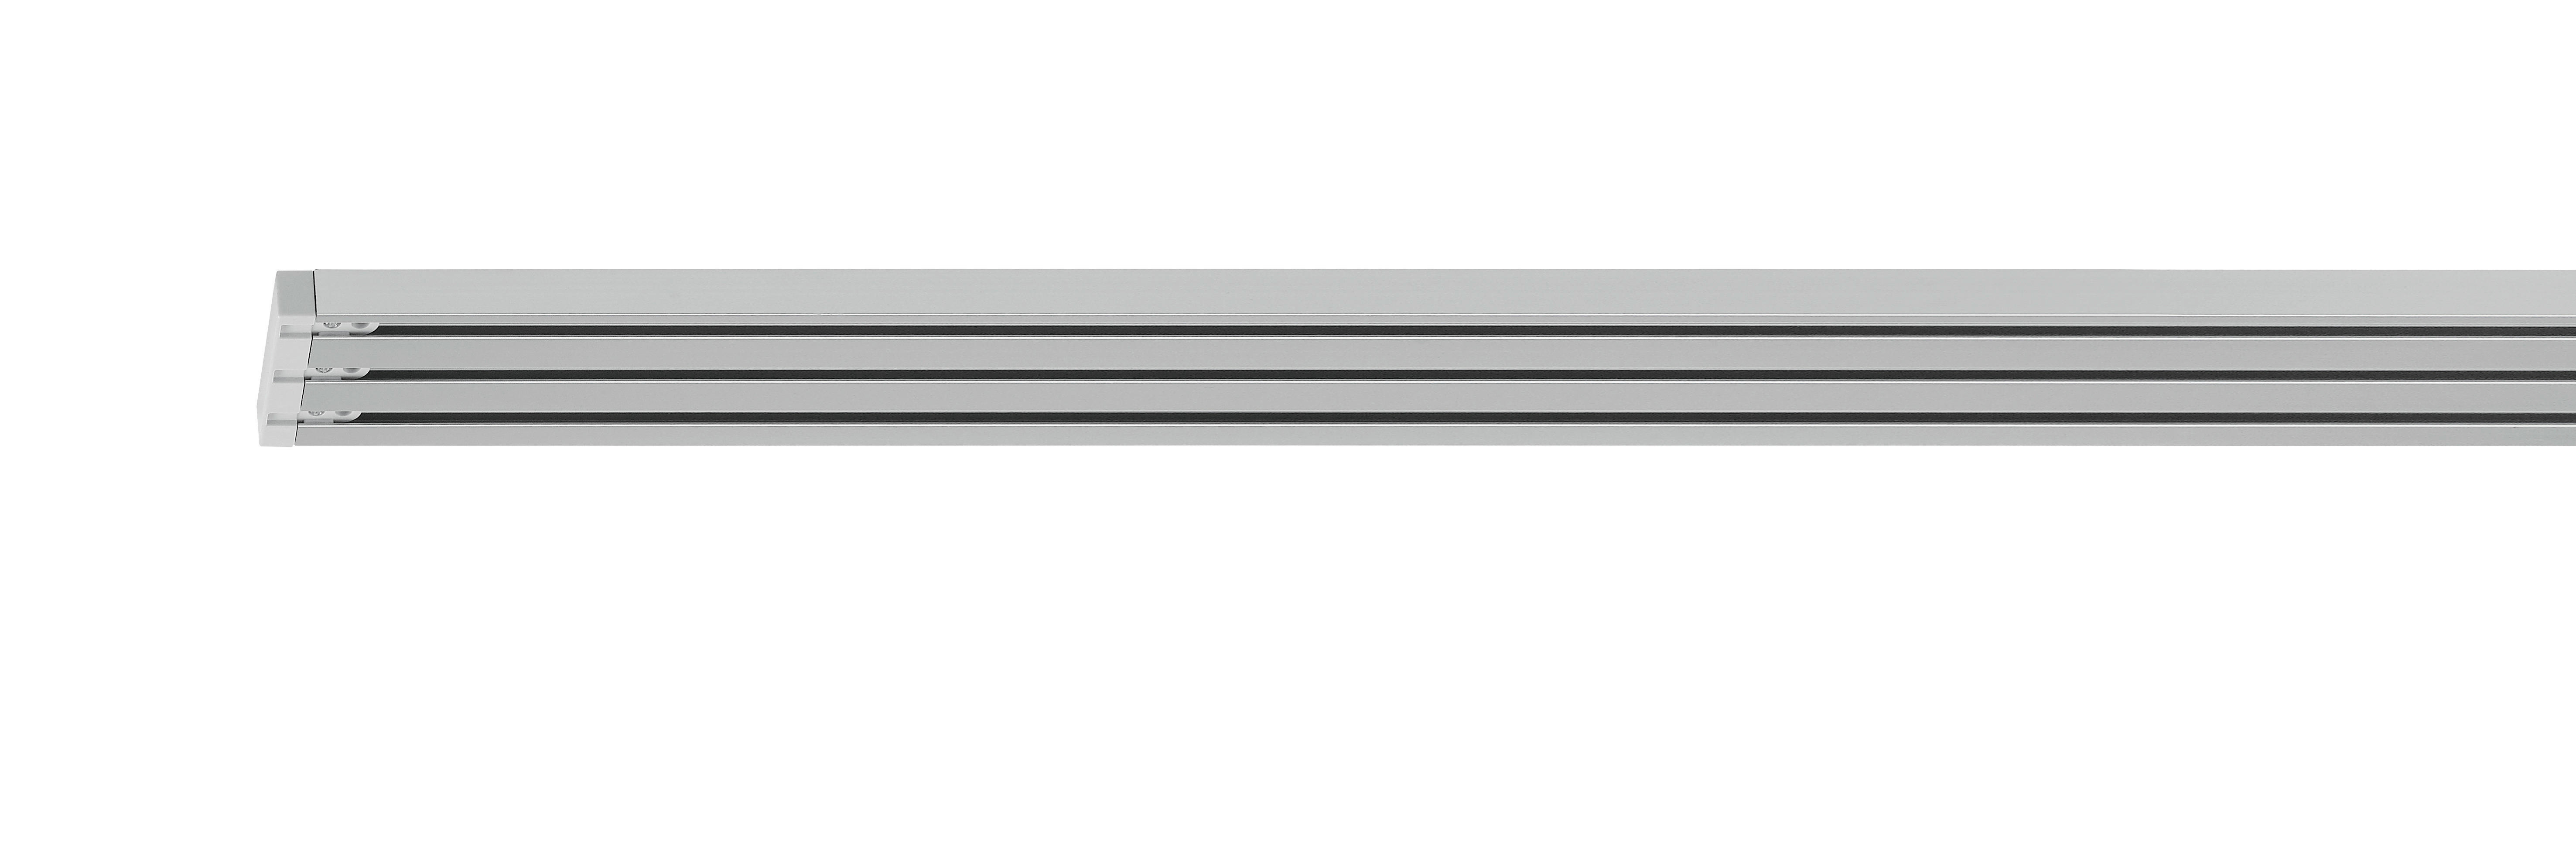 Homeware KOLEJNICE NA PANELOVÝ ZÁVĚS 160 cm - barvy hliníku